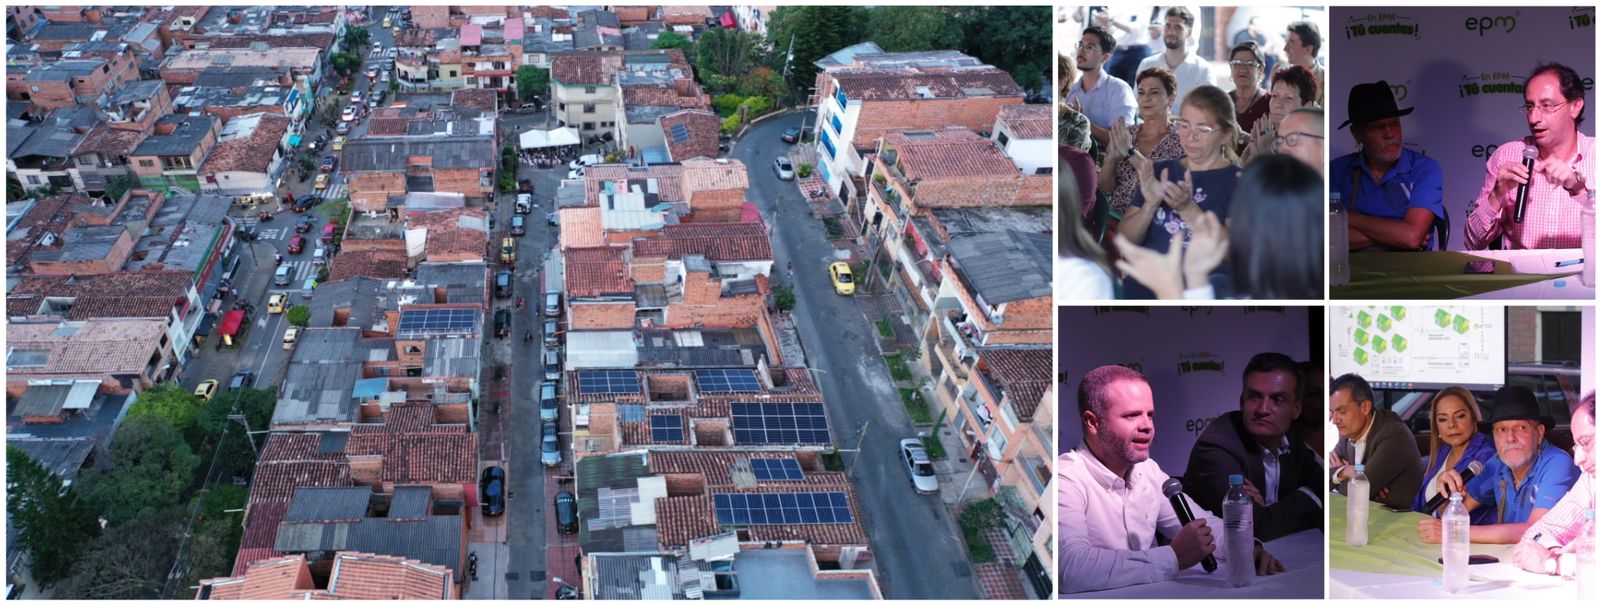 El barrio El Salvador de Medellín es la primera comunidad energética solar de Colombia @epmestamosahi